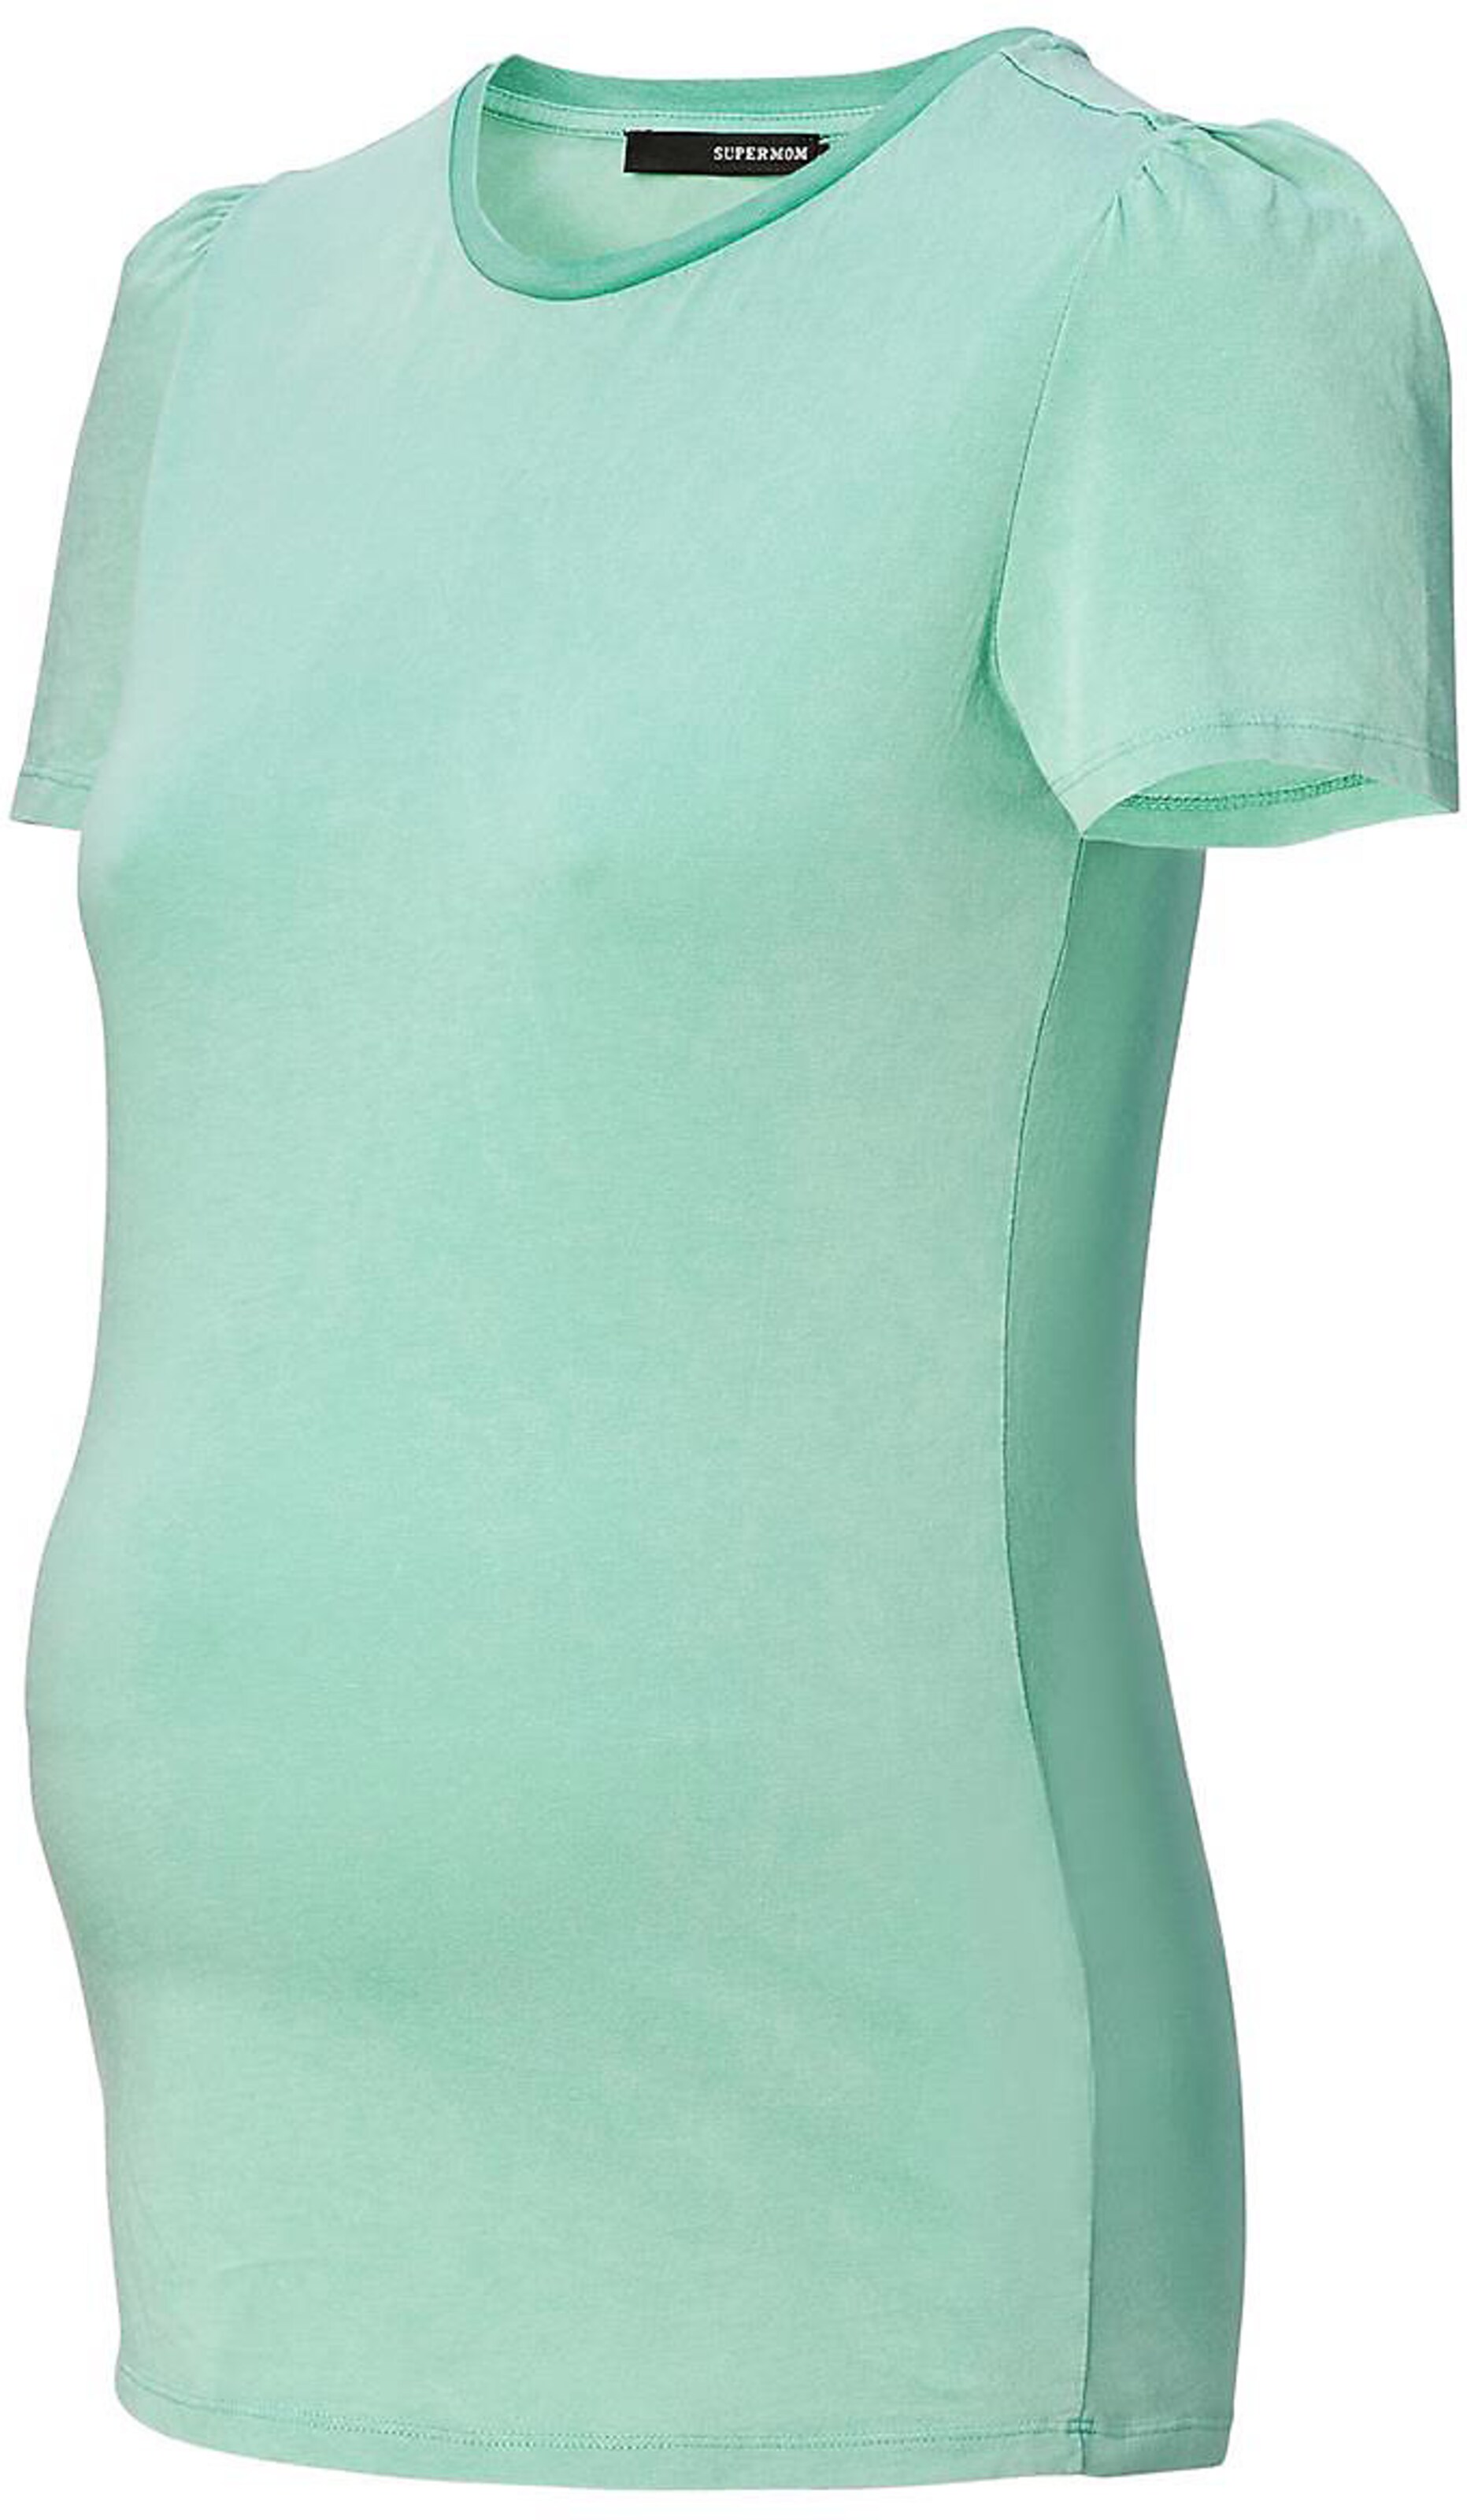 Damen Kleidung Umstandskleidung Shirts Tops und Blusen Diverse zwangerschapsshirts Supermom maat XS Tops und Blusen Supermom Shirts 